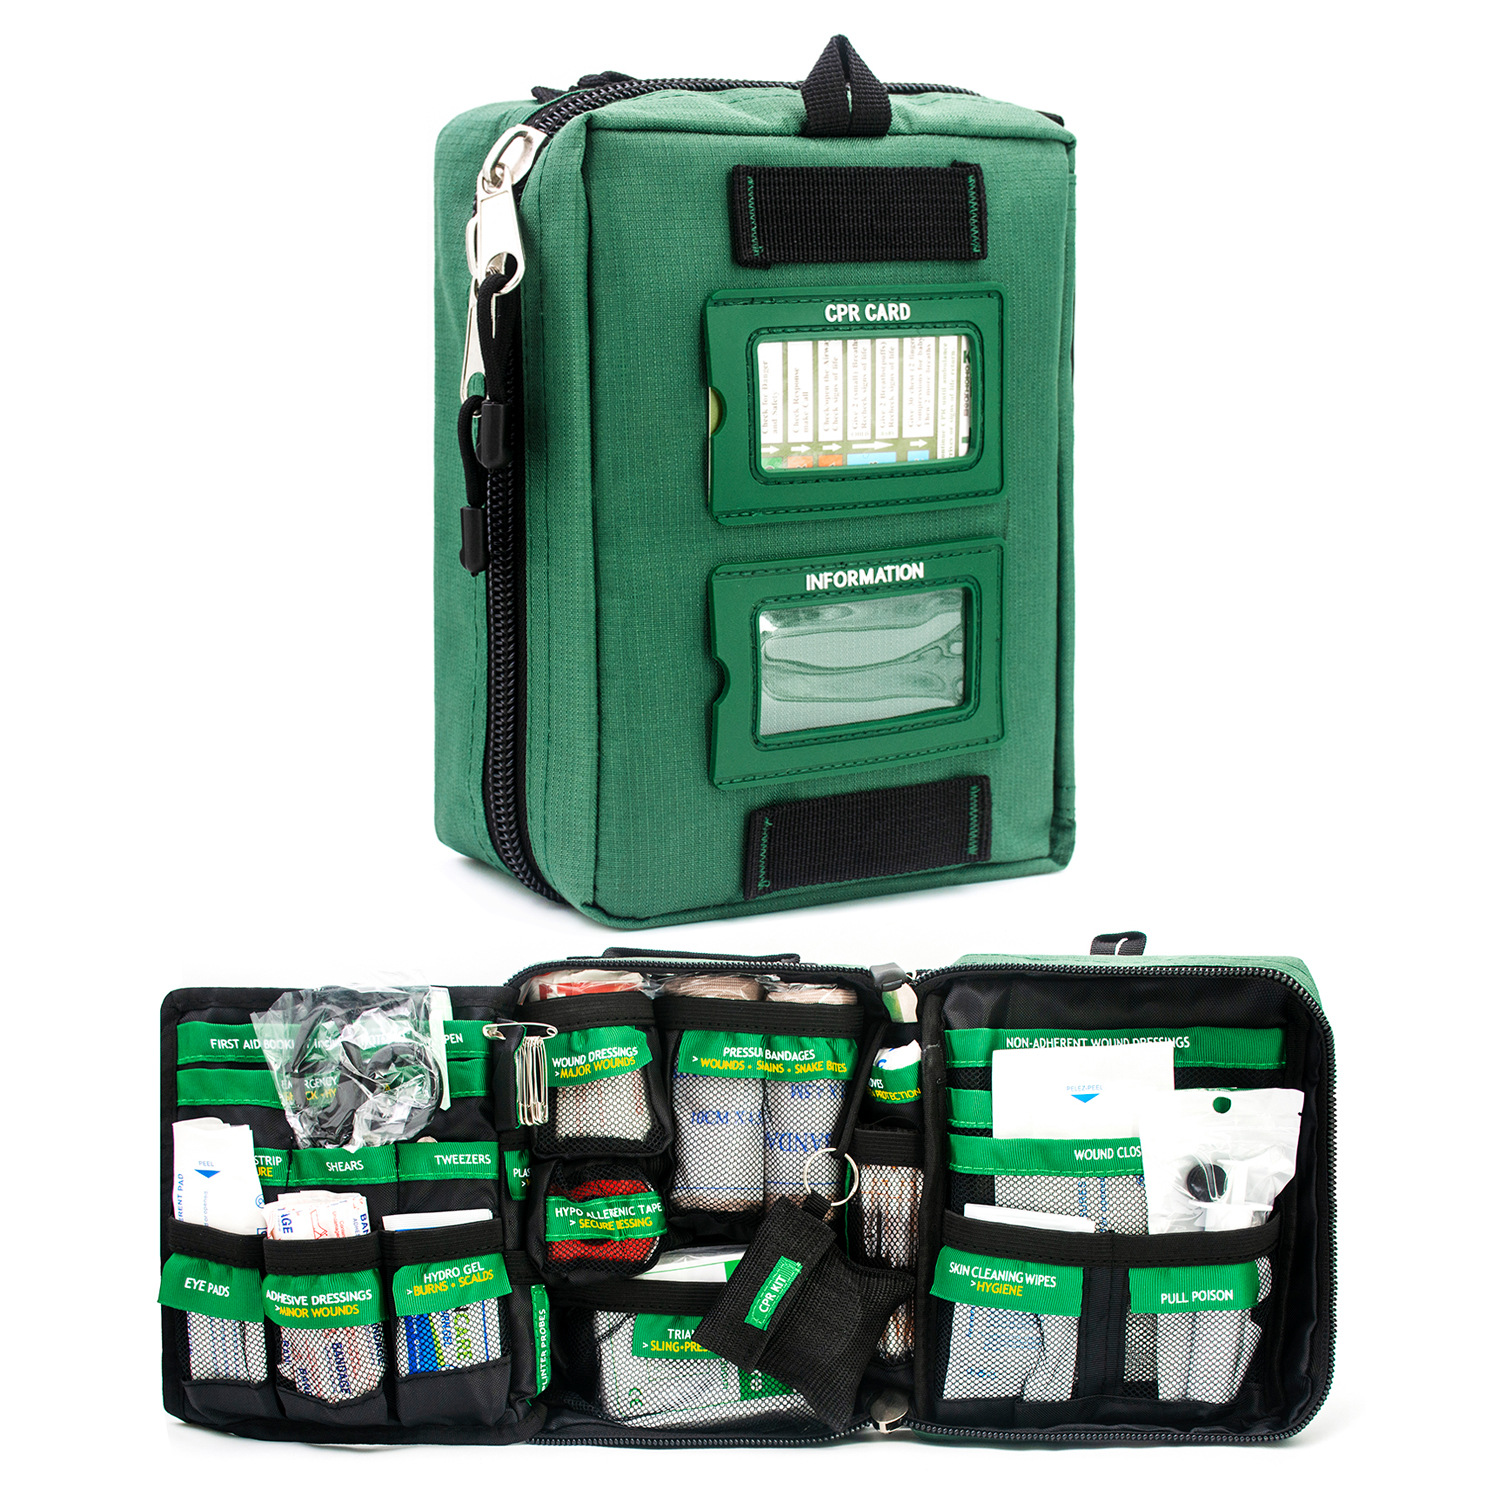 جعبه کمک های اولیه ماشین سبز هوم با چند محفظه و برچسب